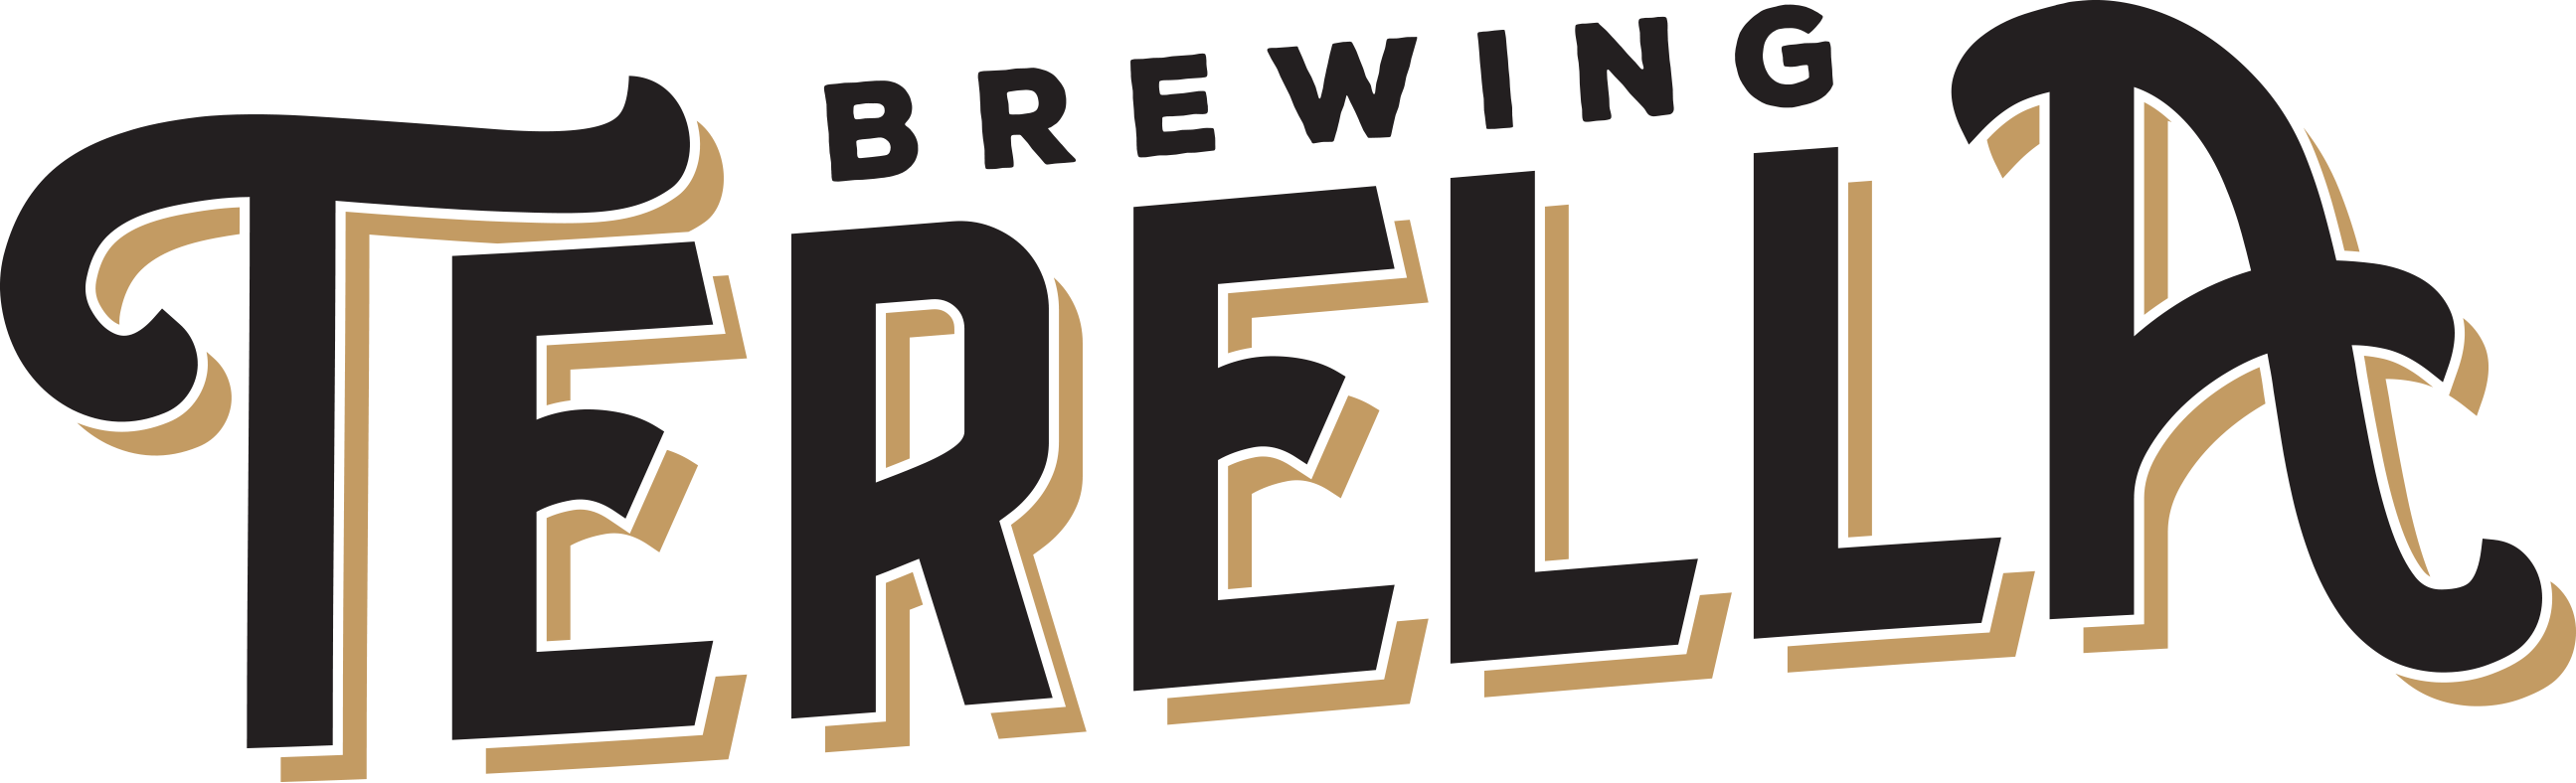 Terella Brewing